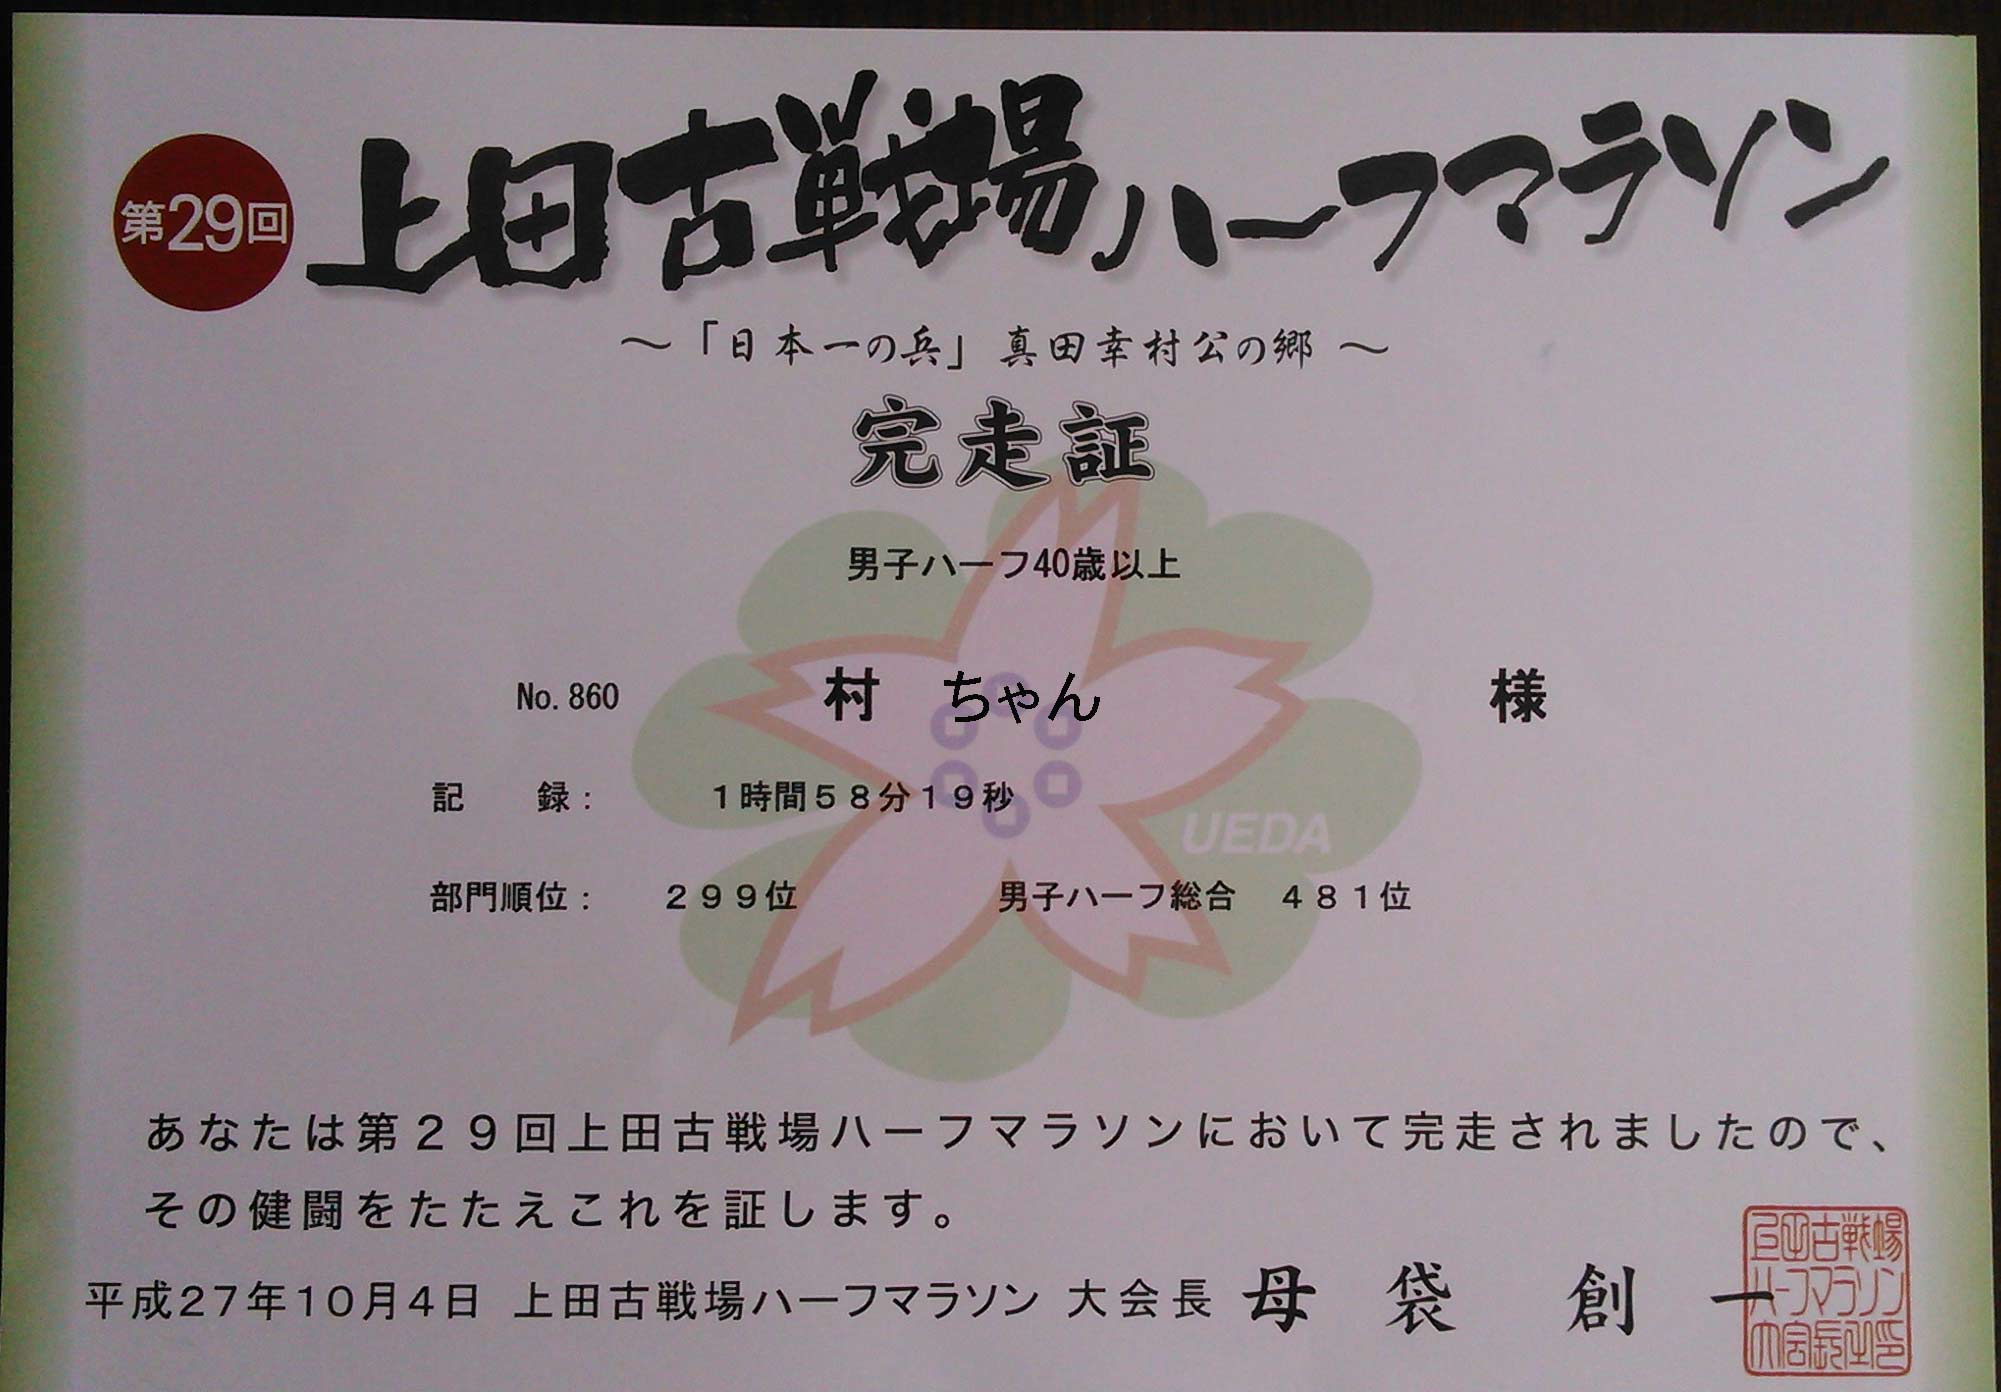 http://blog.murachan2003.com/images/kirokusyo2015kosenjo.jpg